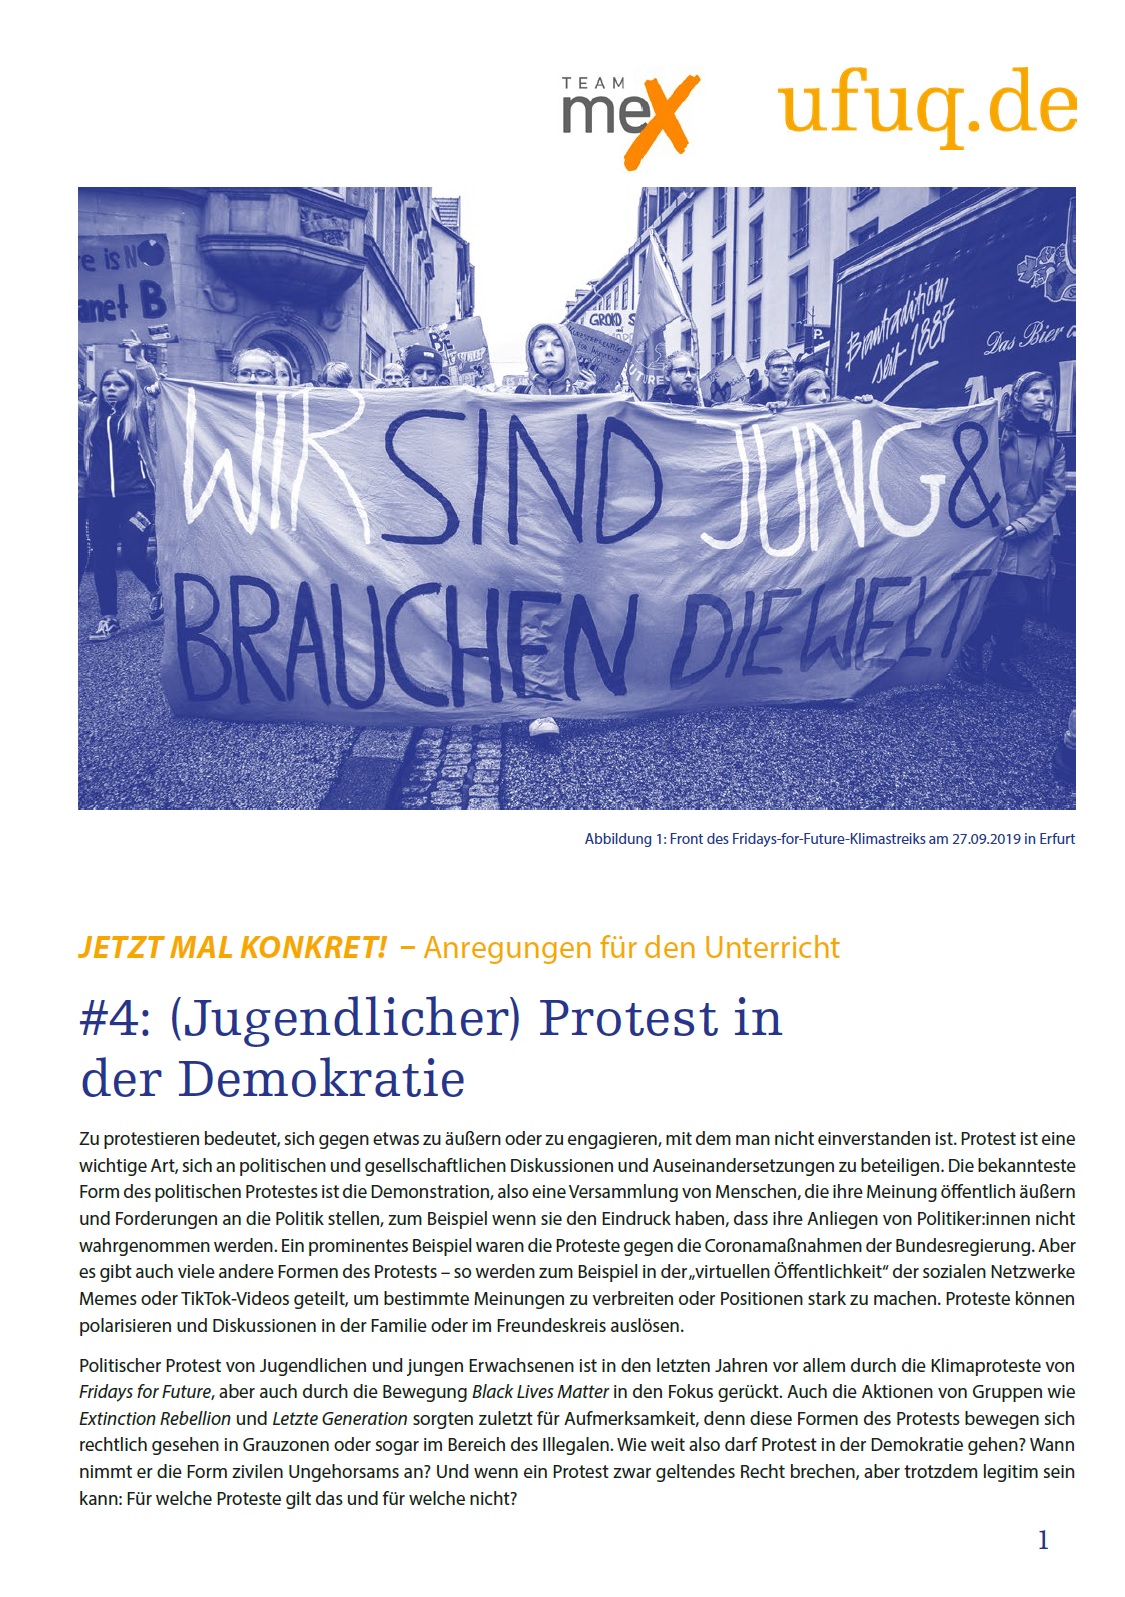 Auf dem Bild ist ein Foto abgebildet, dass den Beginn einer Demonstration zeigt. Unter dem Bild steht (Jugendlicher) Protest in der Demokratie. darunter wiederum beginnt der Text des Berichts.